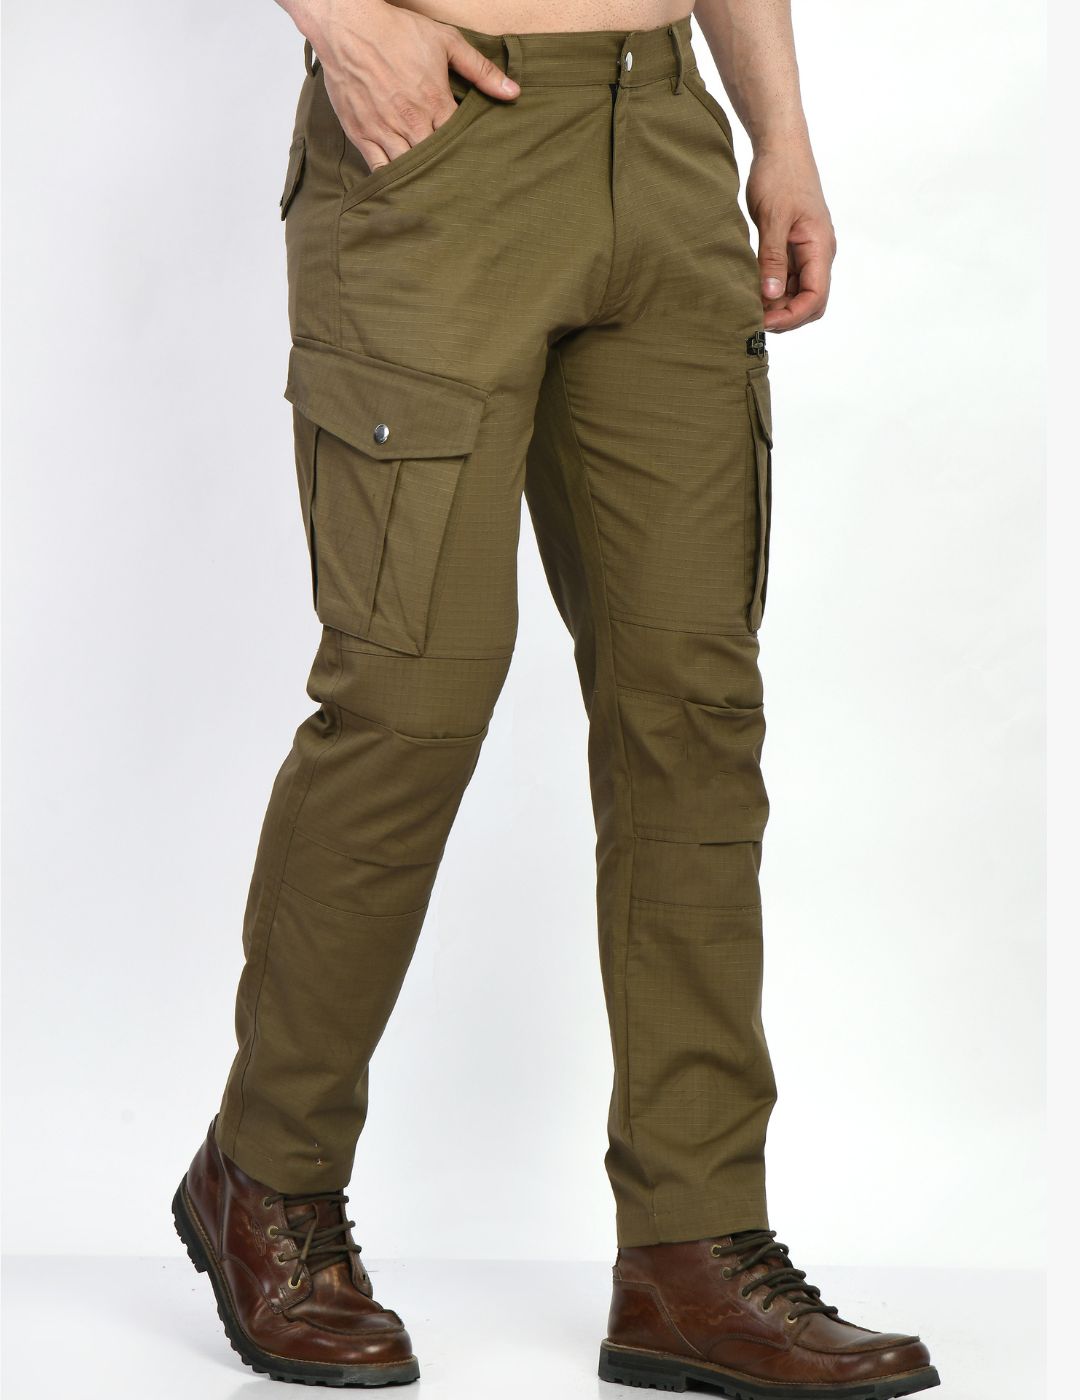 Men's 7-pocket Cargo Pants- Khaki